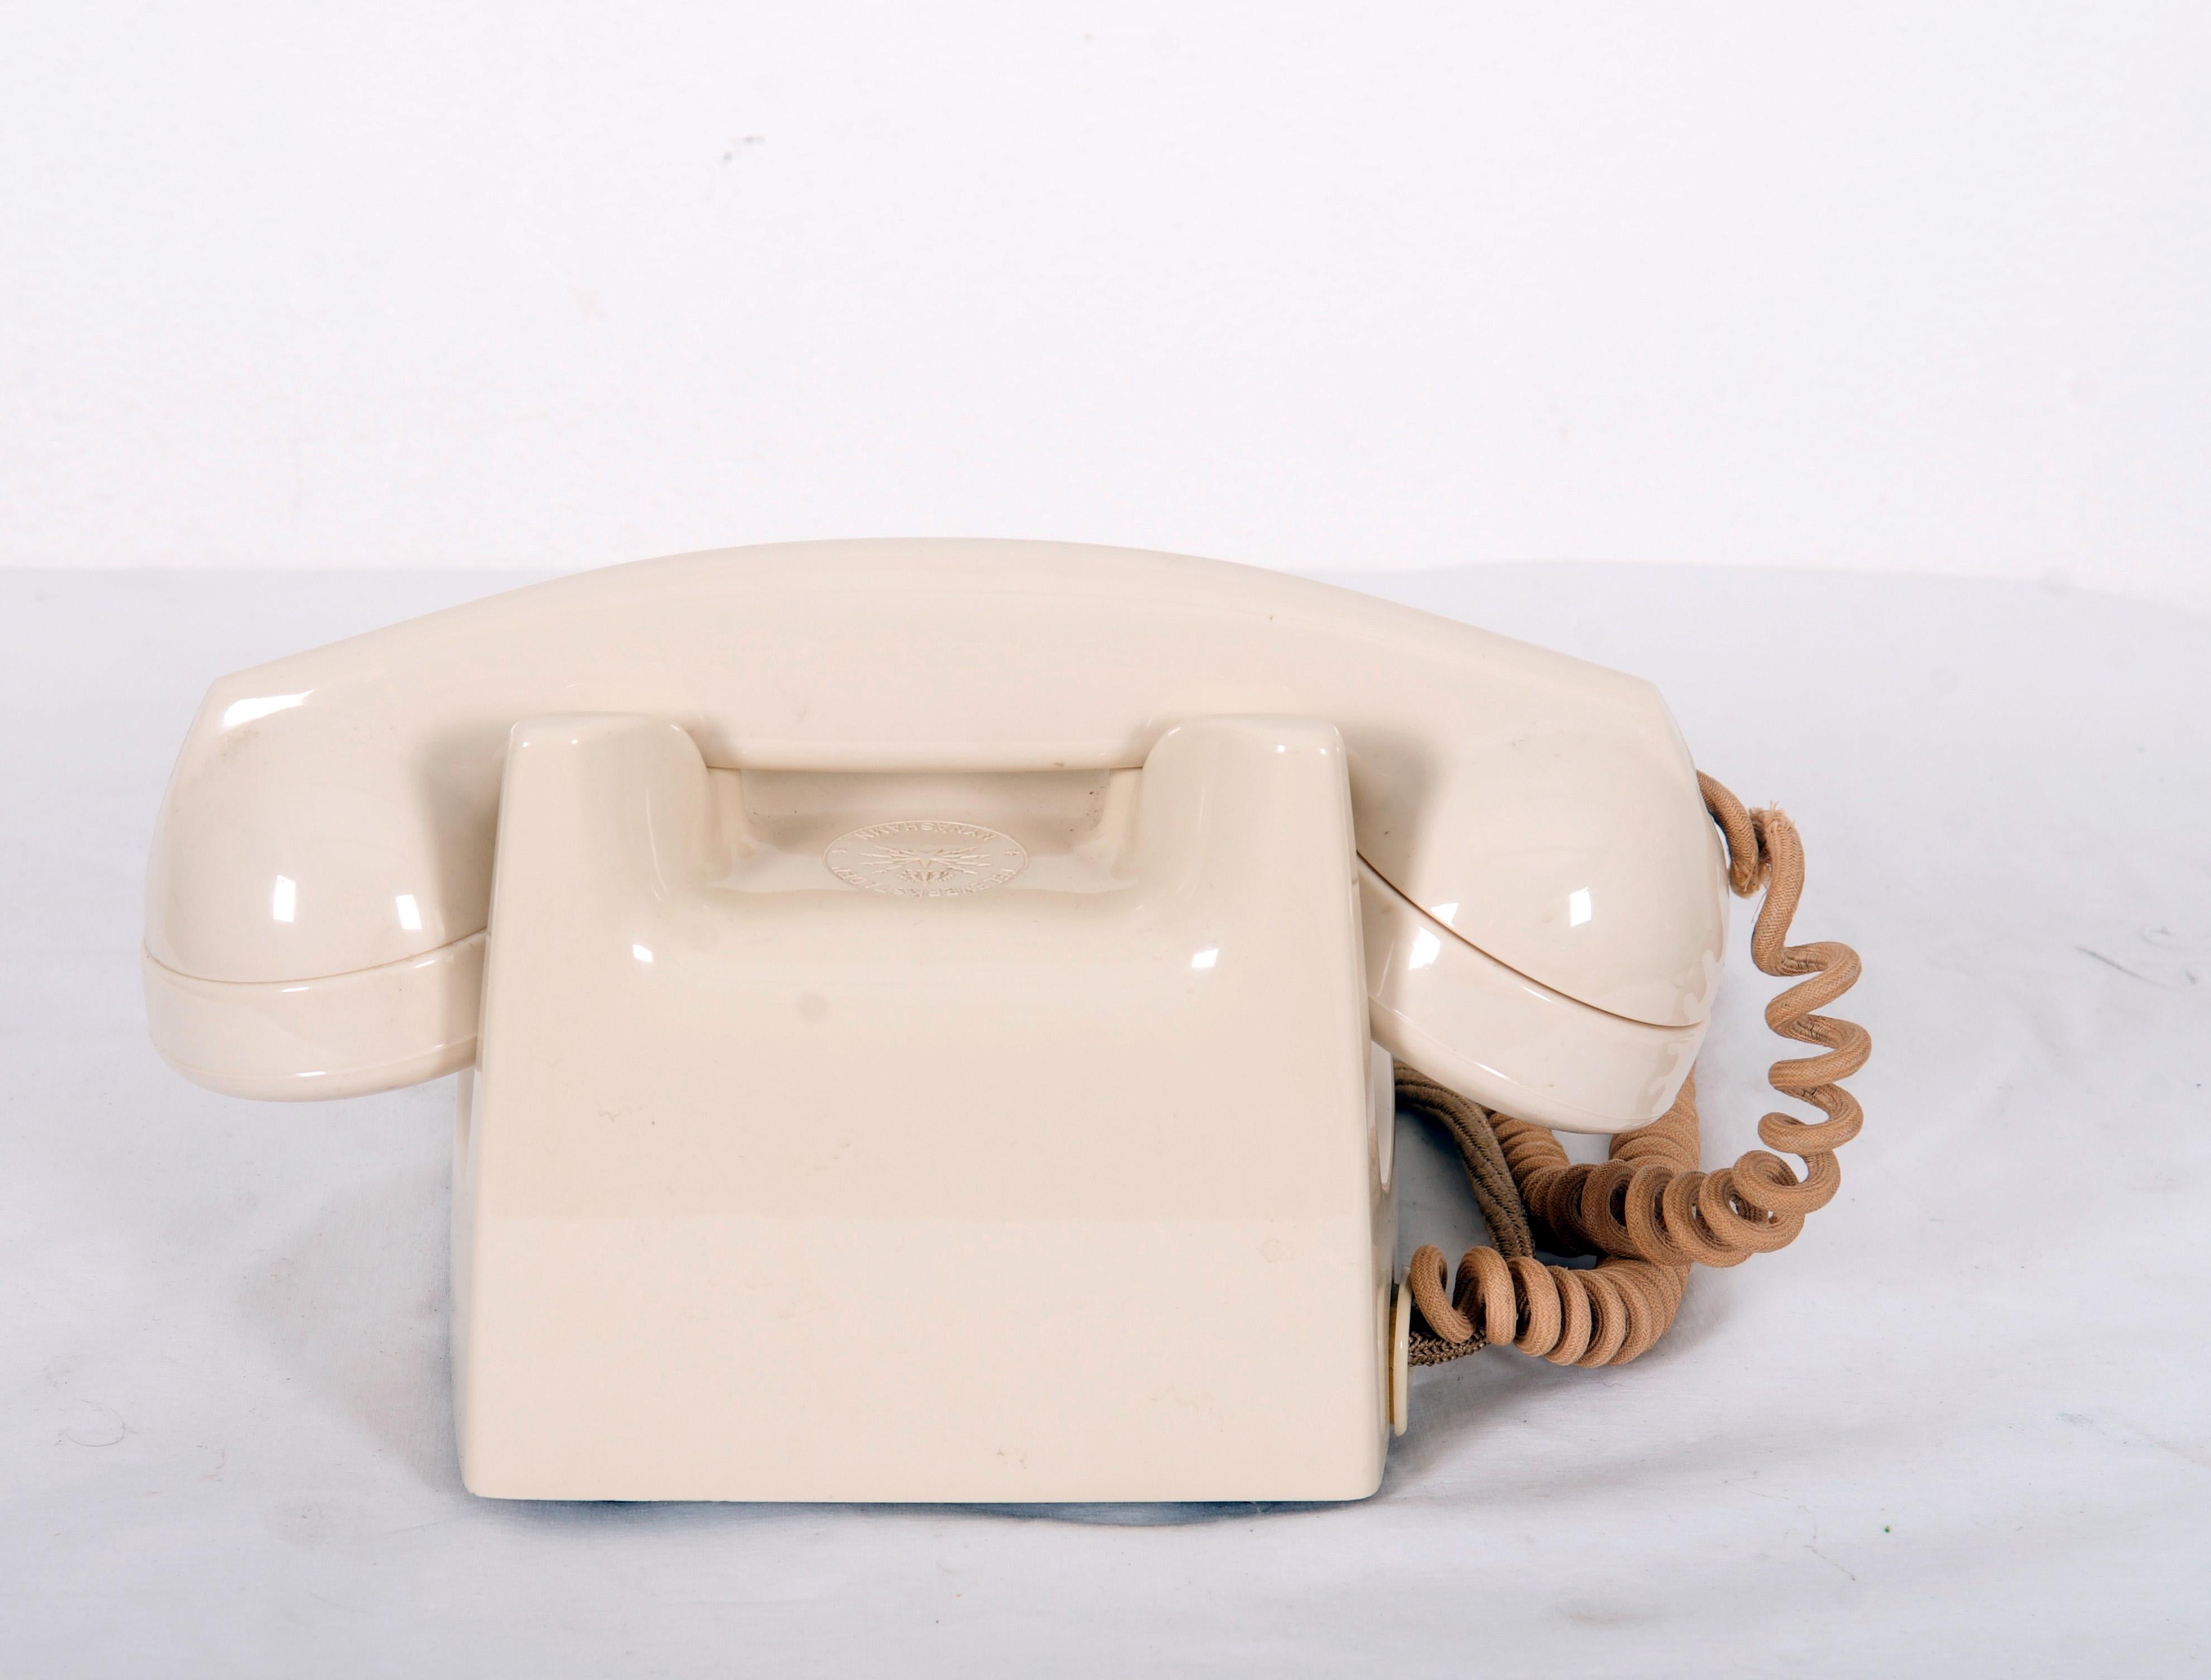 Acier Phone suédois vintage de table en bakélite beige en vente